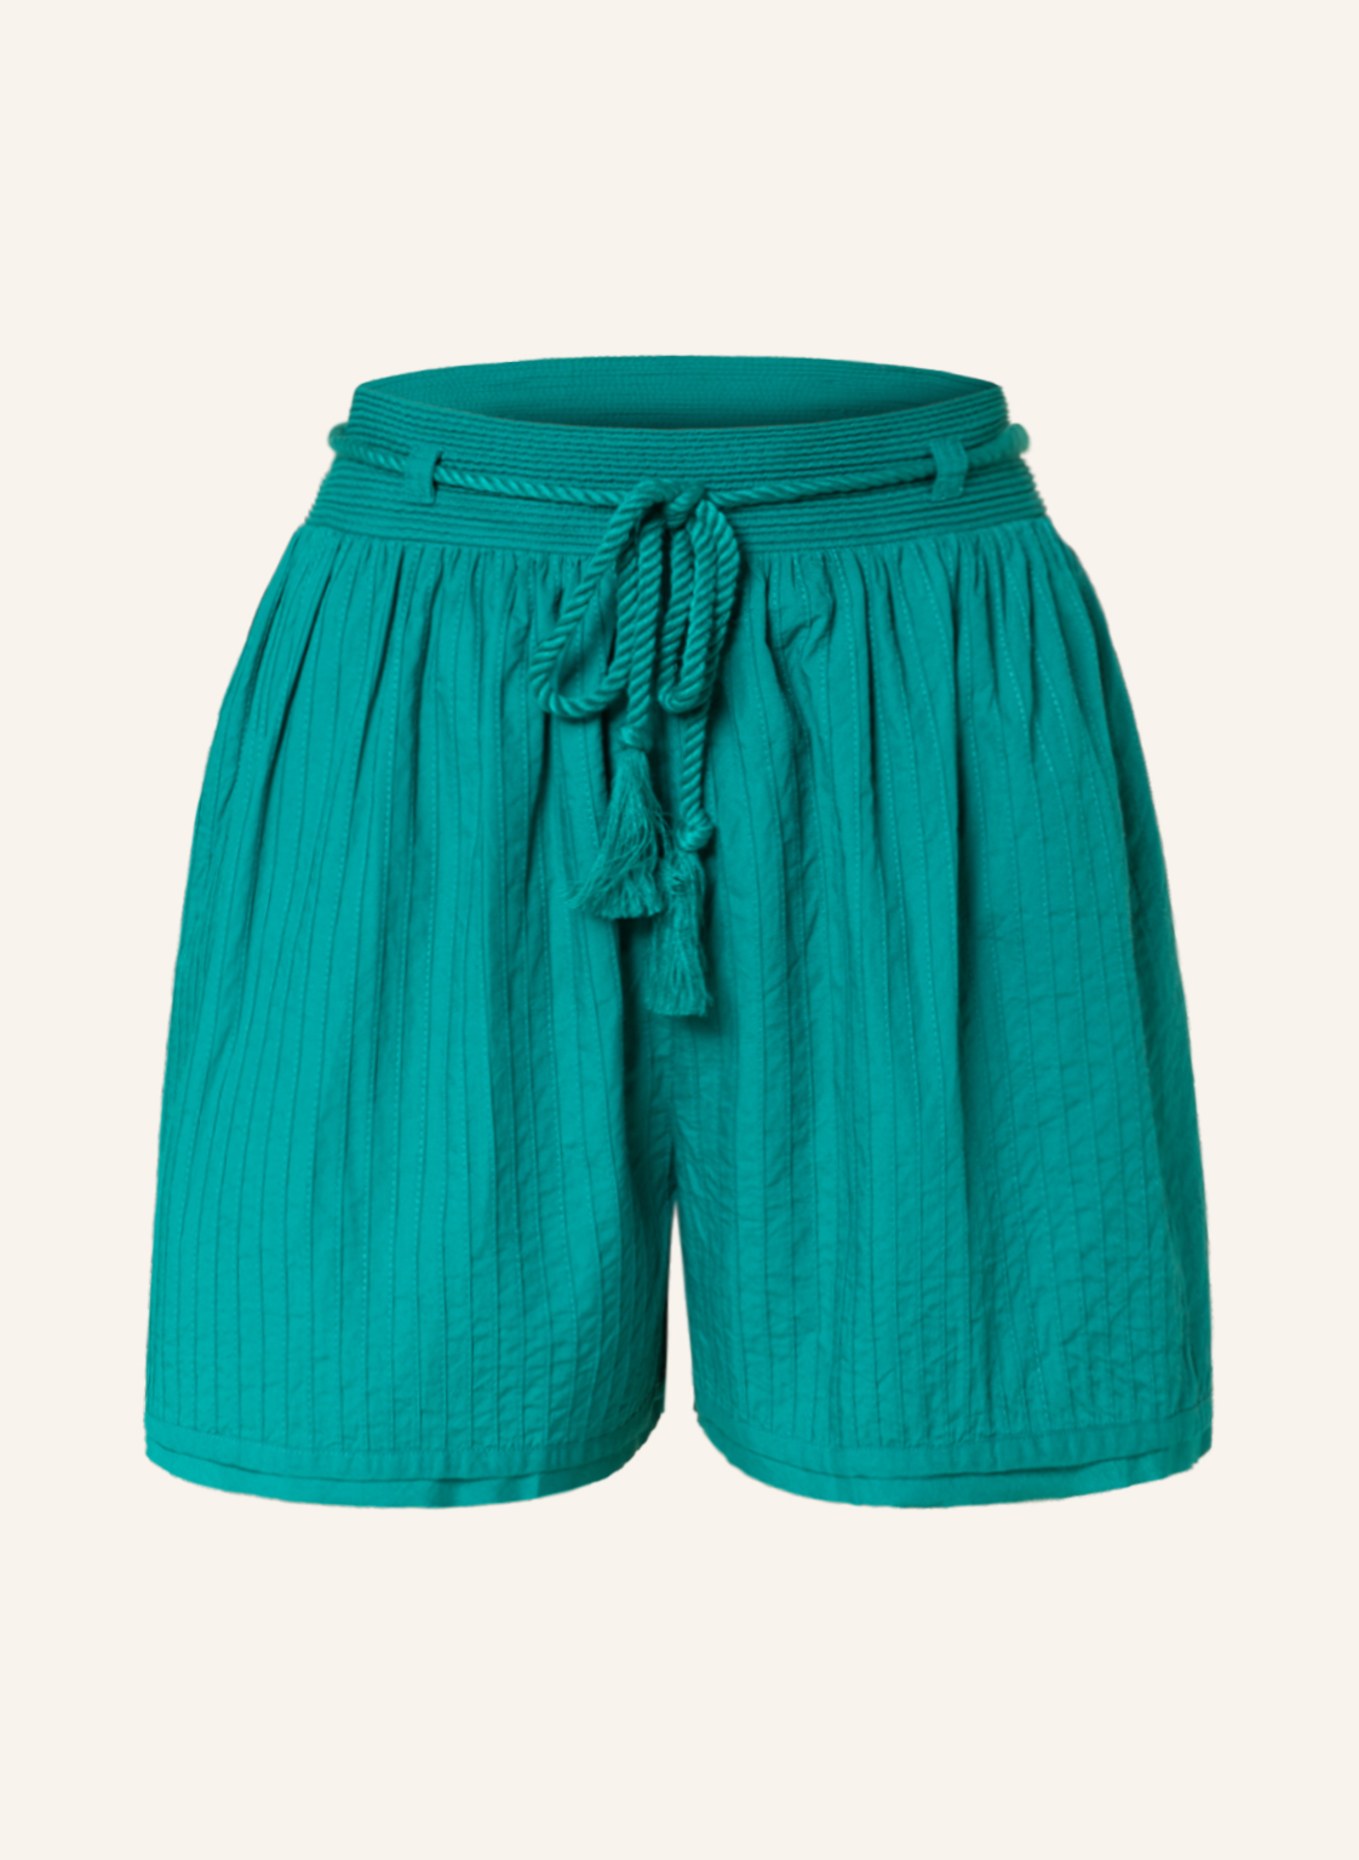 ULLA JOHNSON Shorts RINA, Color: GREEN (Image 1)